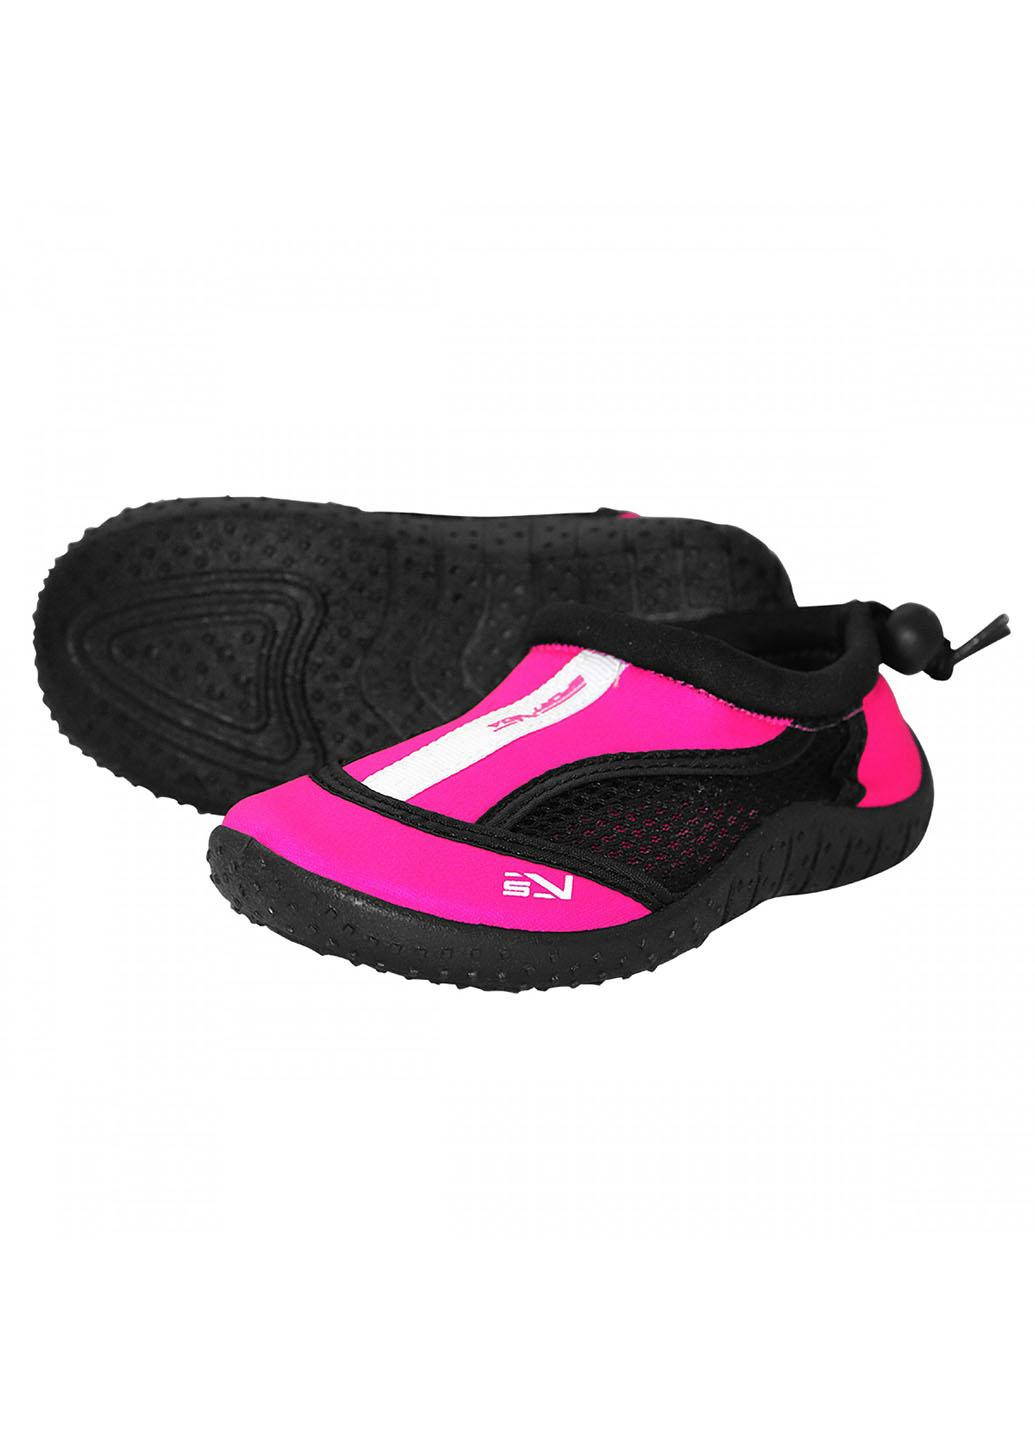 Обувь для пляжа и кораллов (аквашузы) SV-GY0001-R28 Size 28 Black/Pink SportVida (258486776)